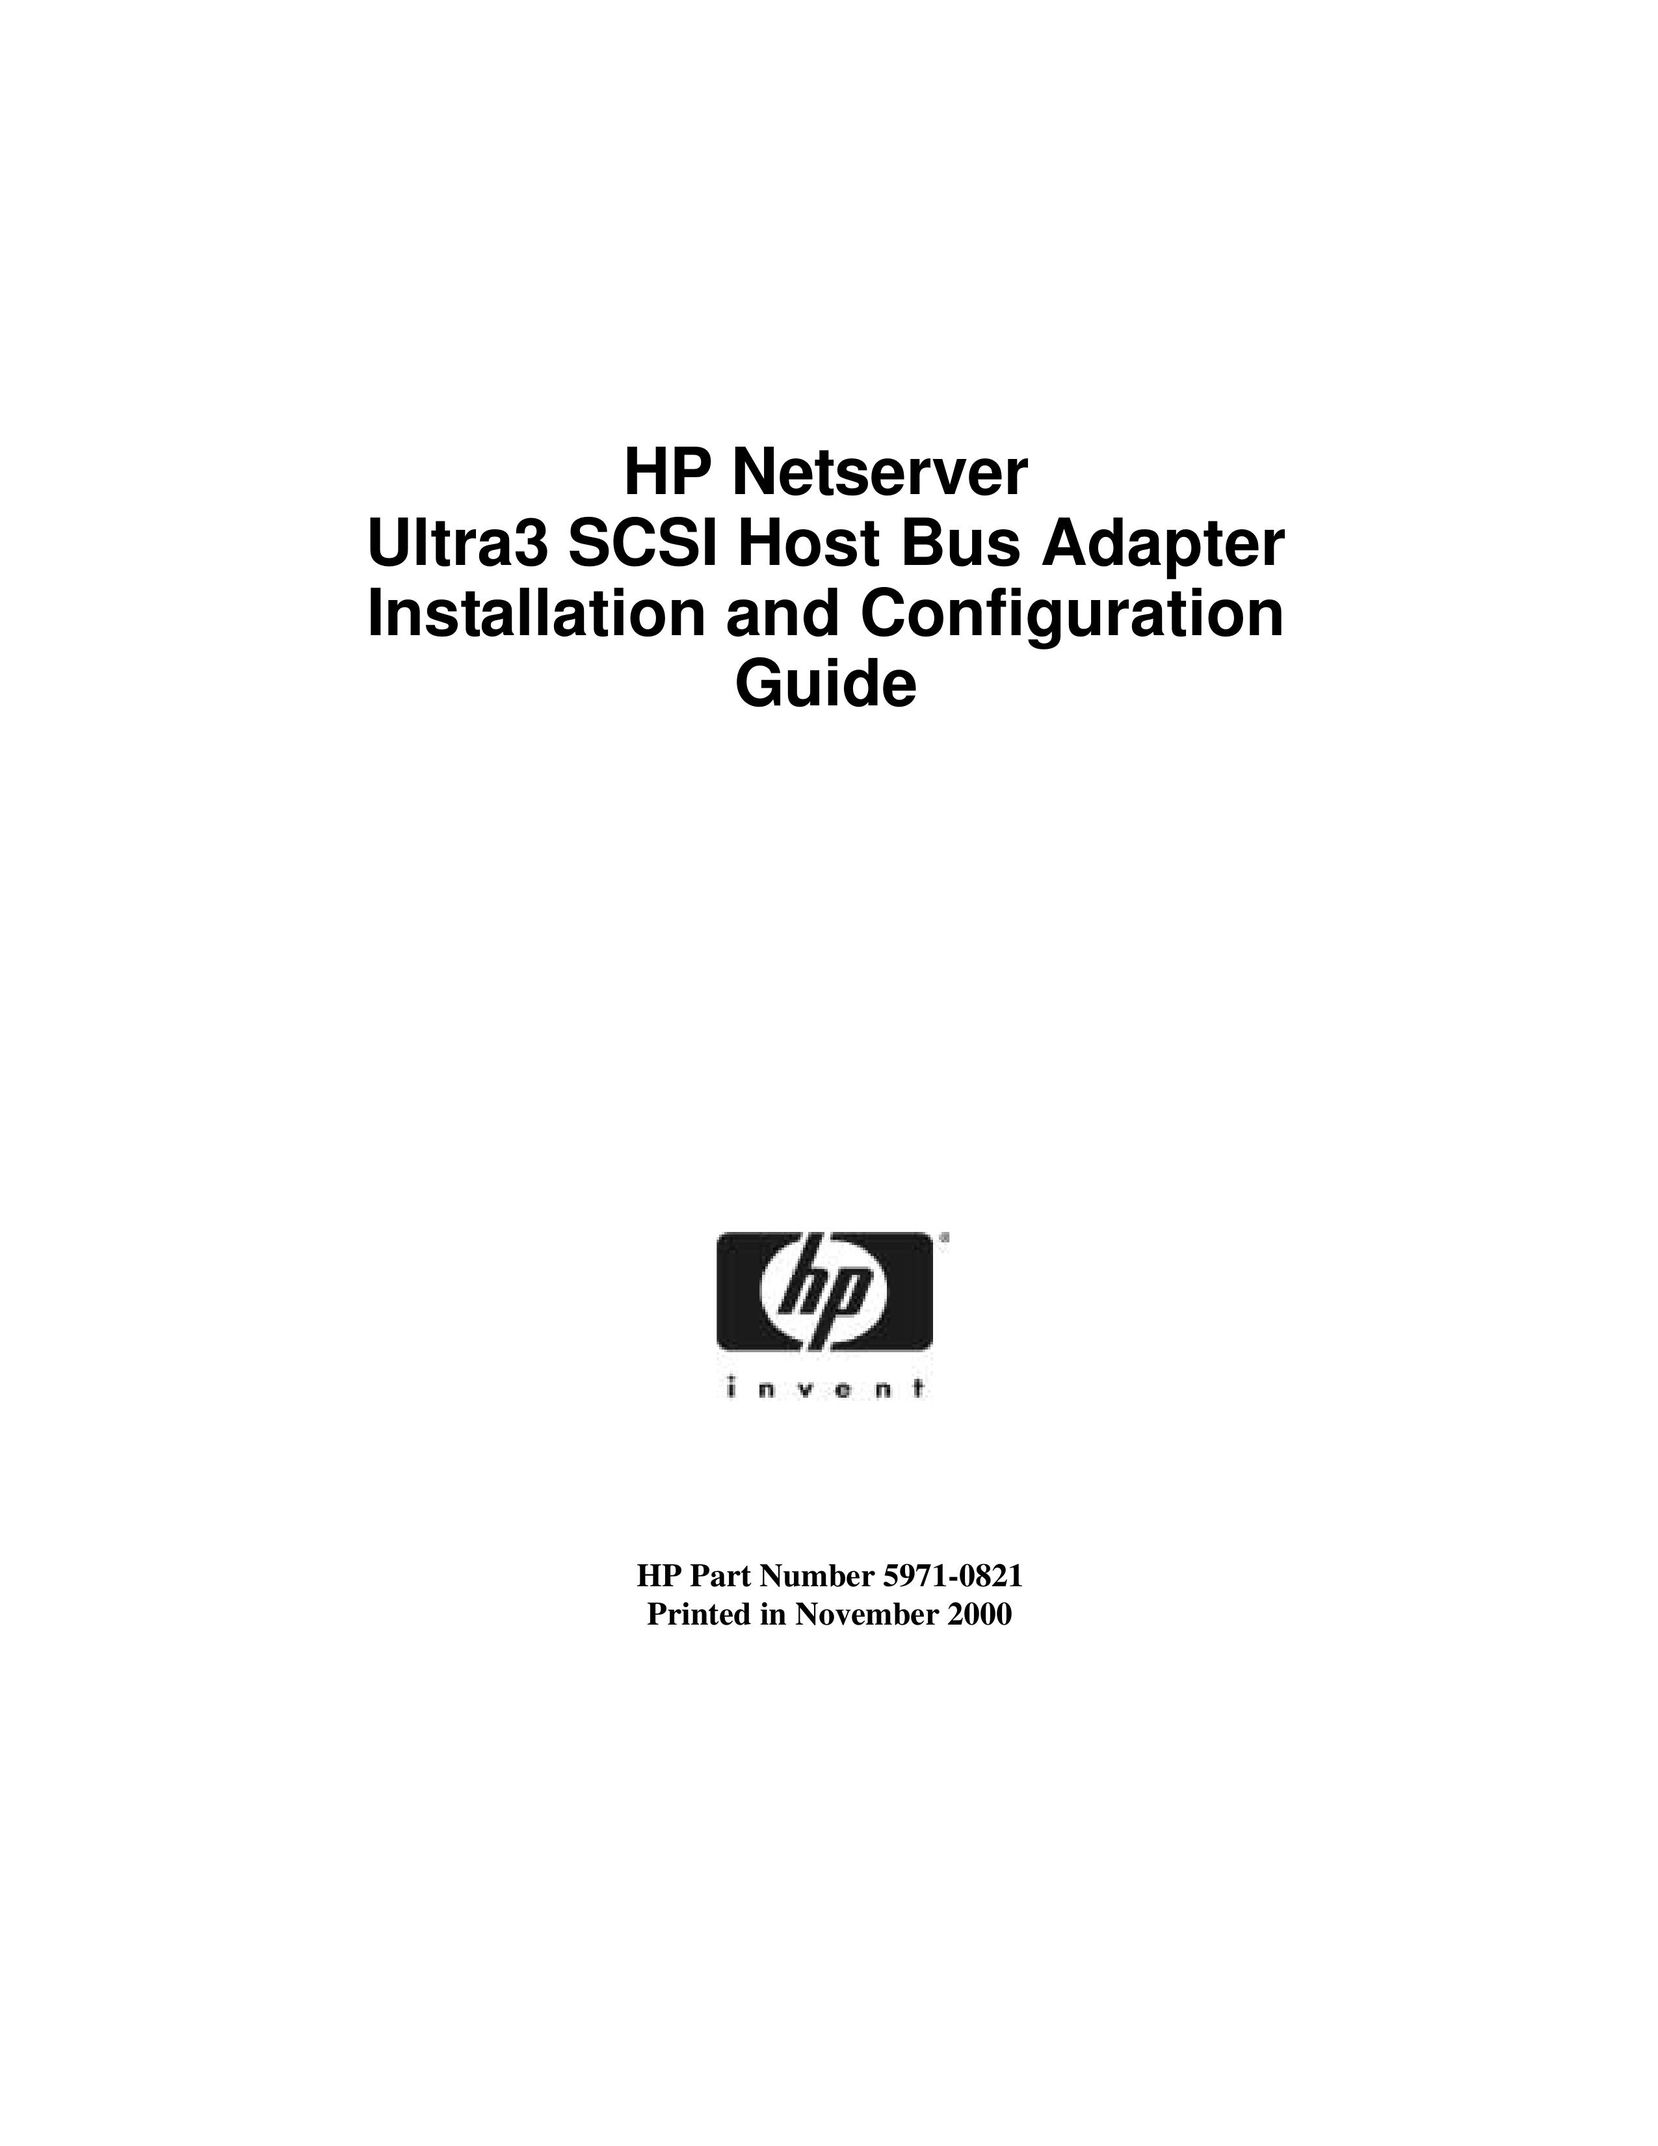 HP (Hewlett-Packard) 5971-0821 Network Card User Manual